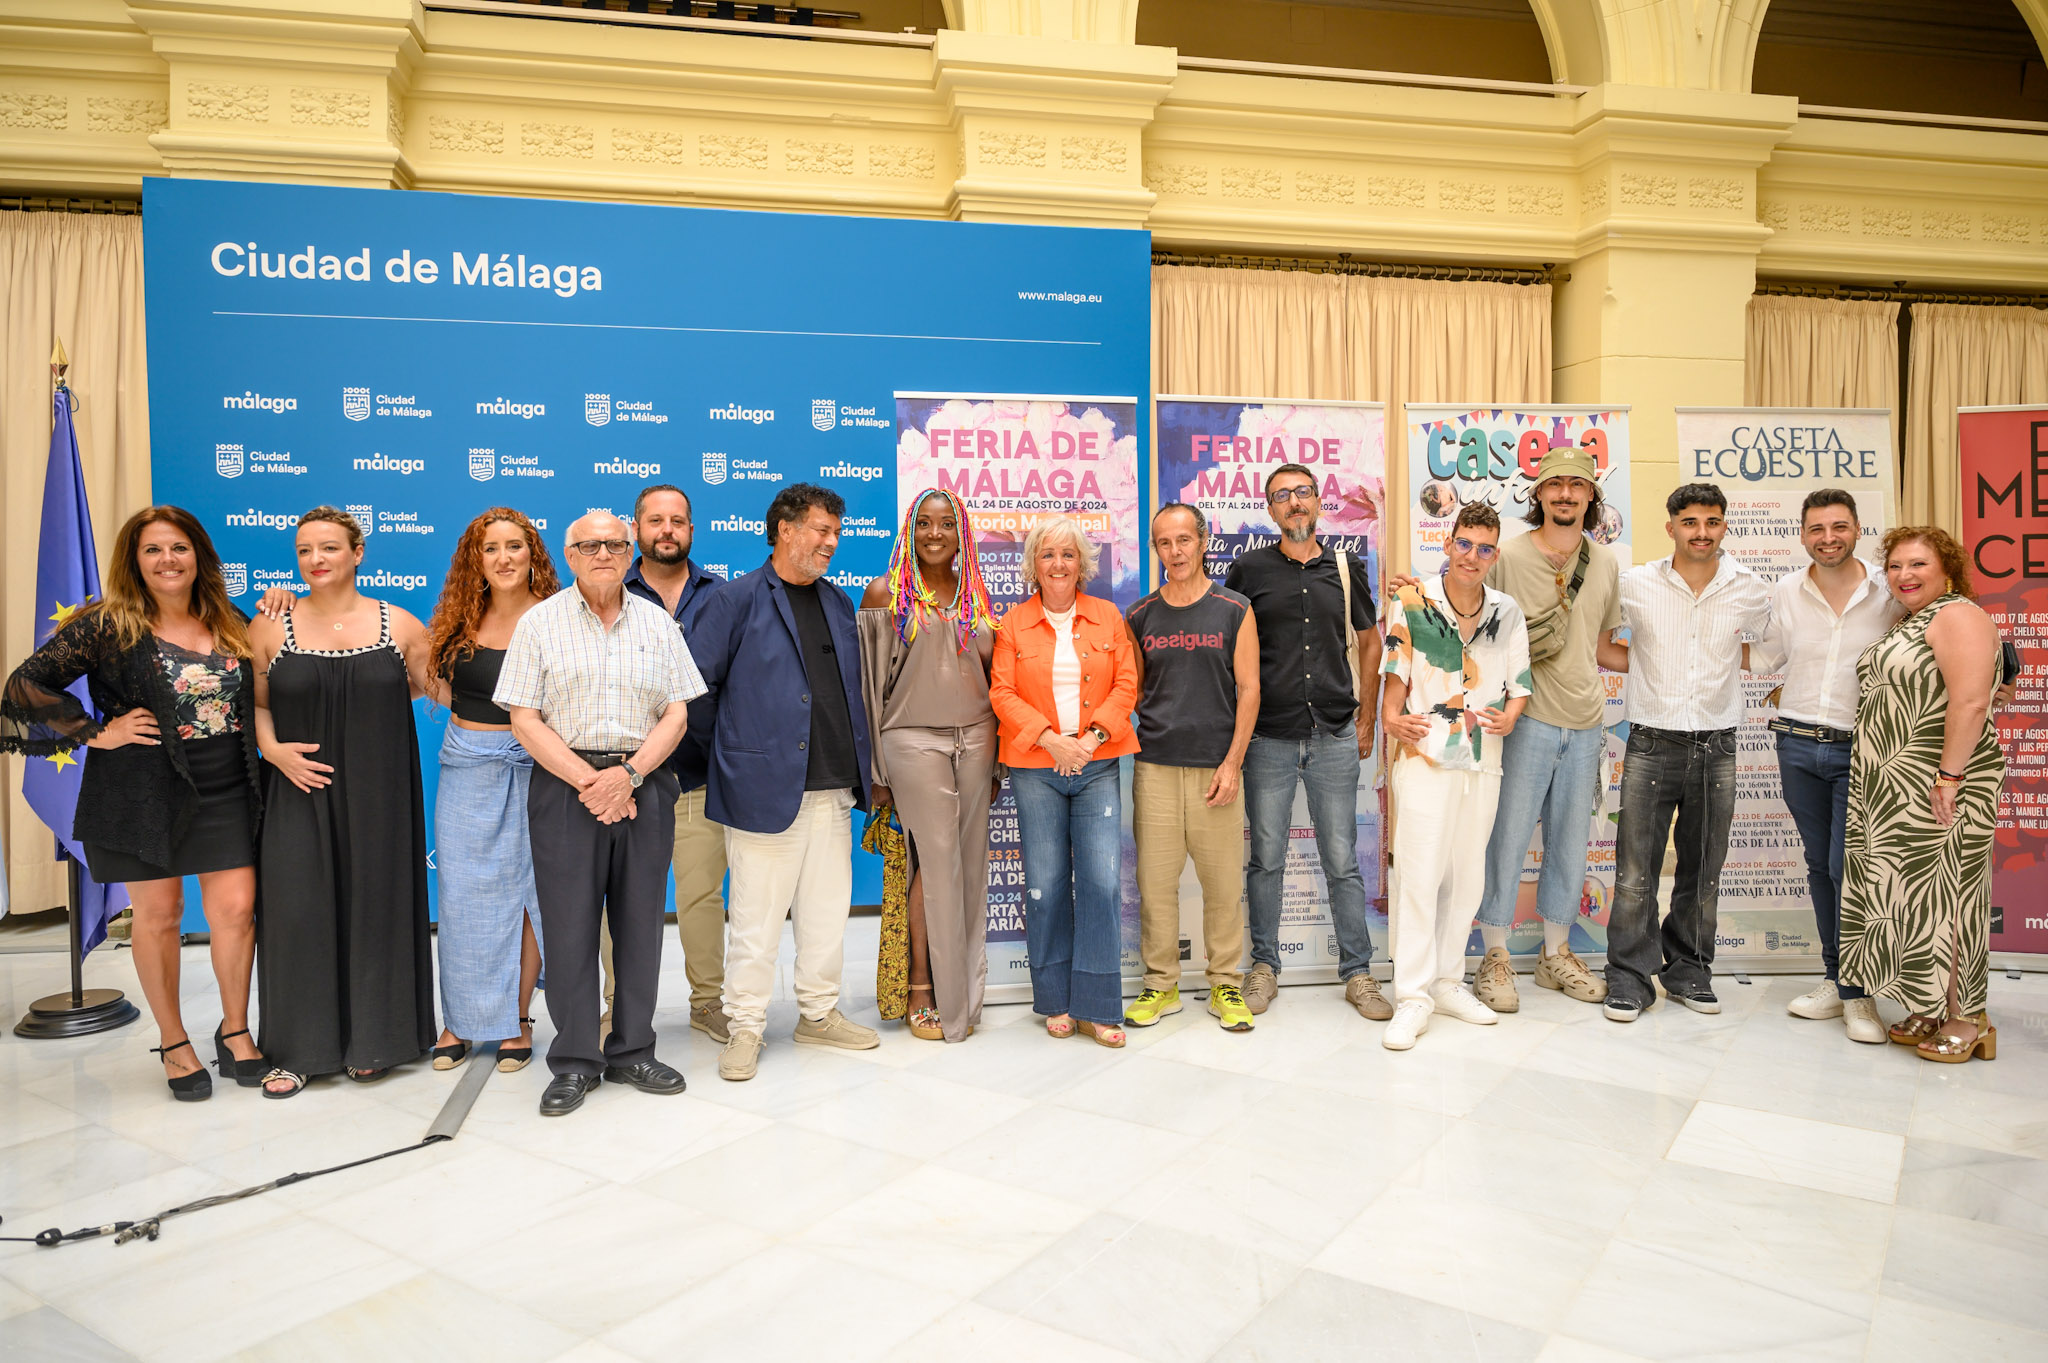 José Mercé, Lucrecia, Toni Zenet, María Peláe, Chenoa, Carlos Baute y Adrián Martín, artistas que
actuarán en la Feria de Málaga